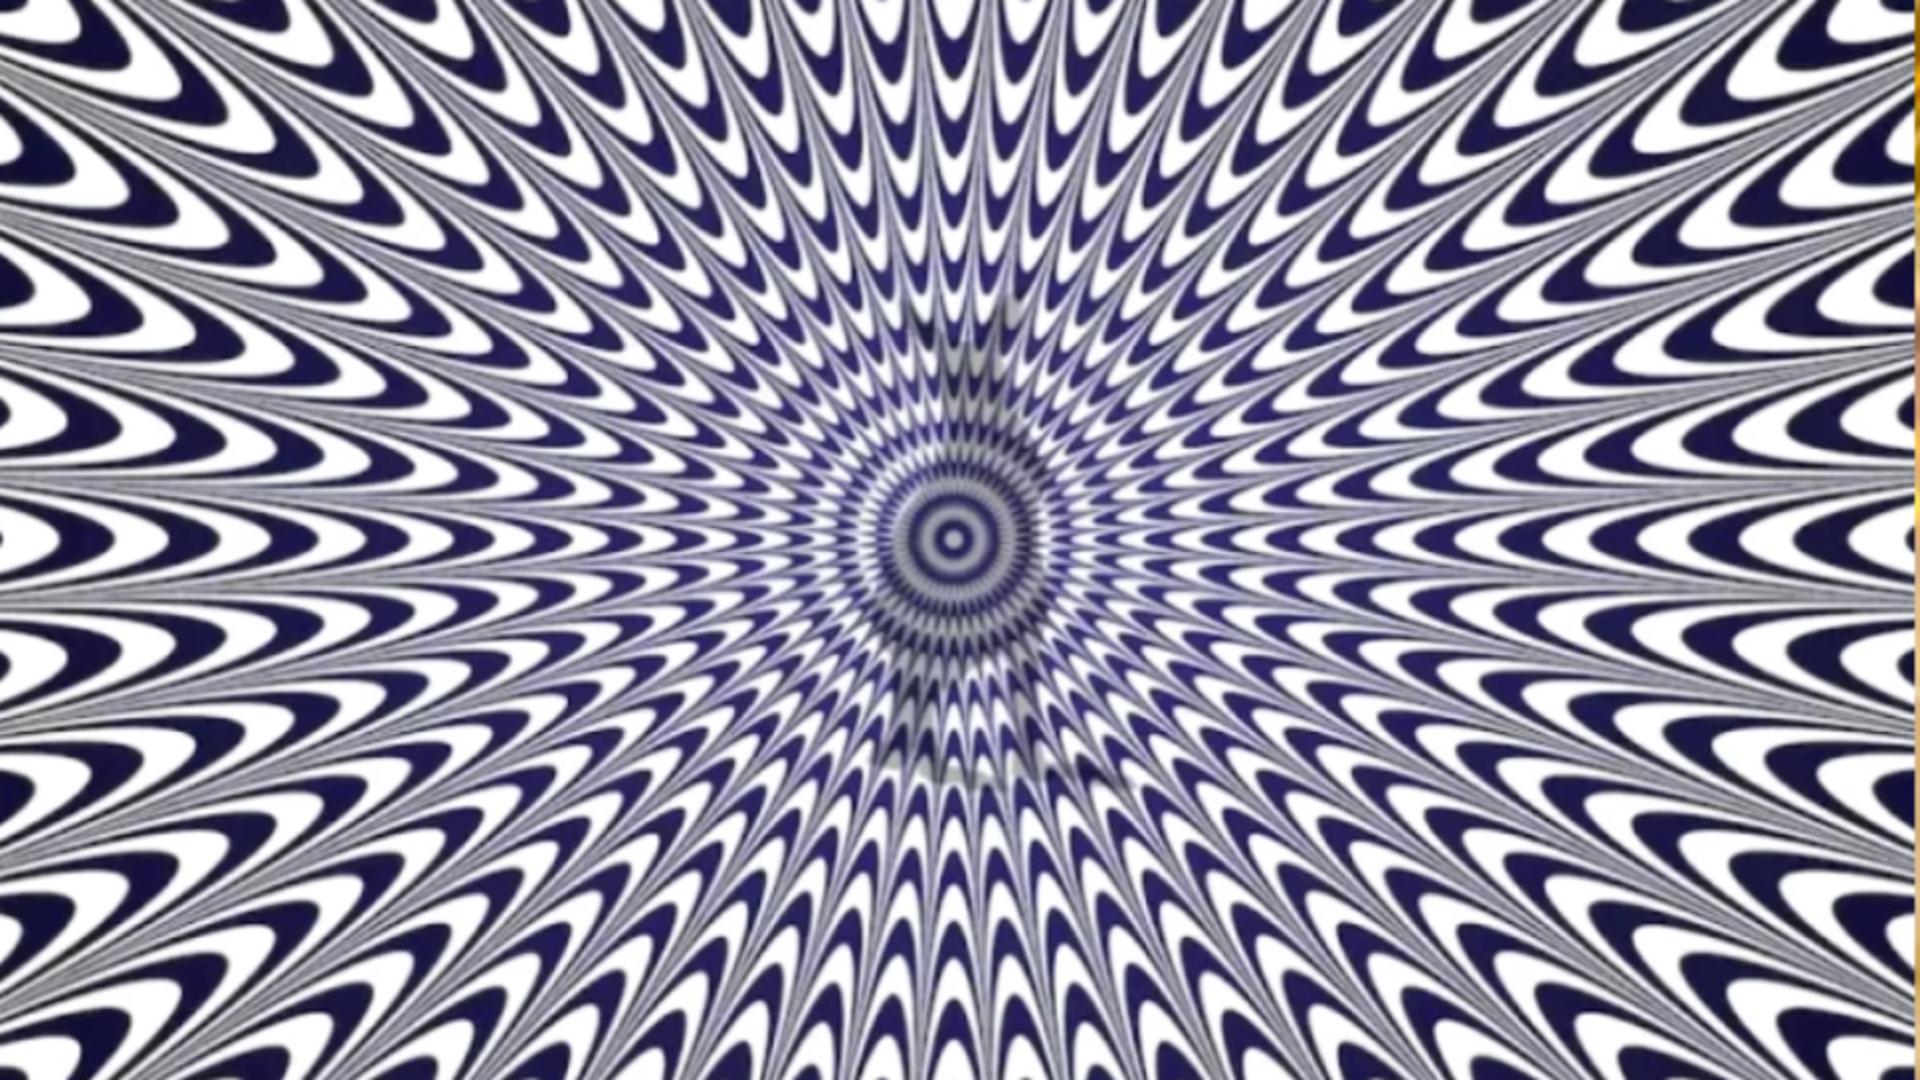 Iluzia optică ce poate crea confuzie totală. Tu reușești să ghicești animalul din imagine: provocarea maximă